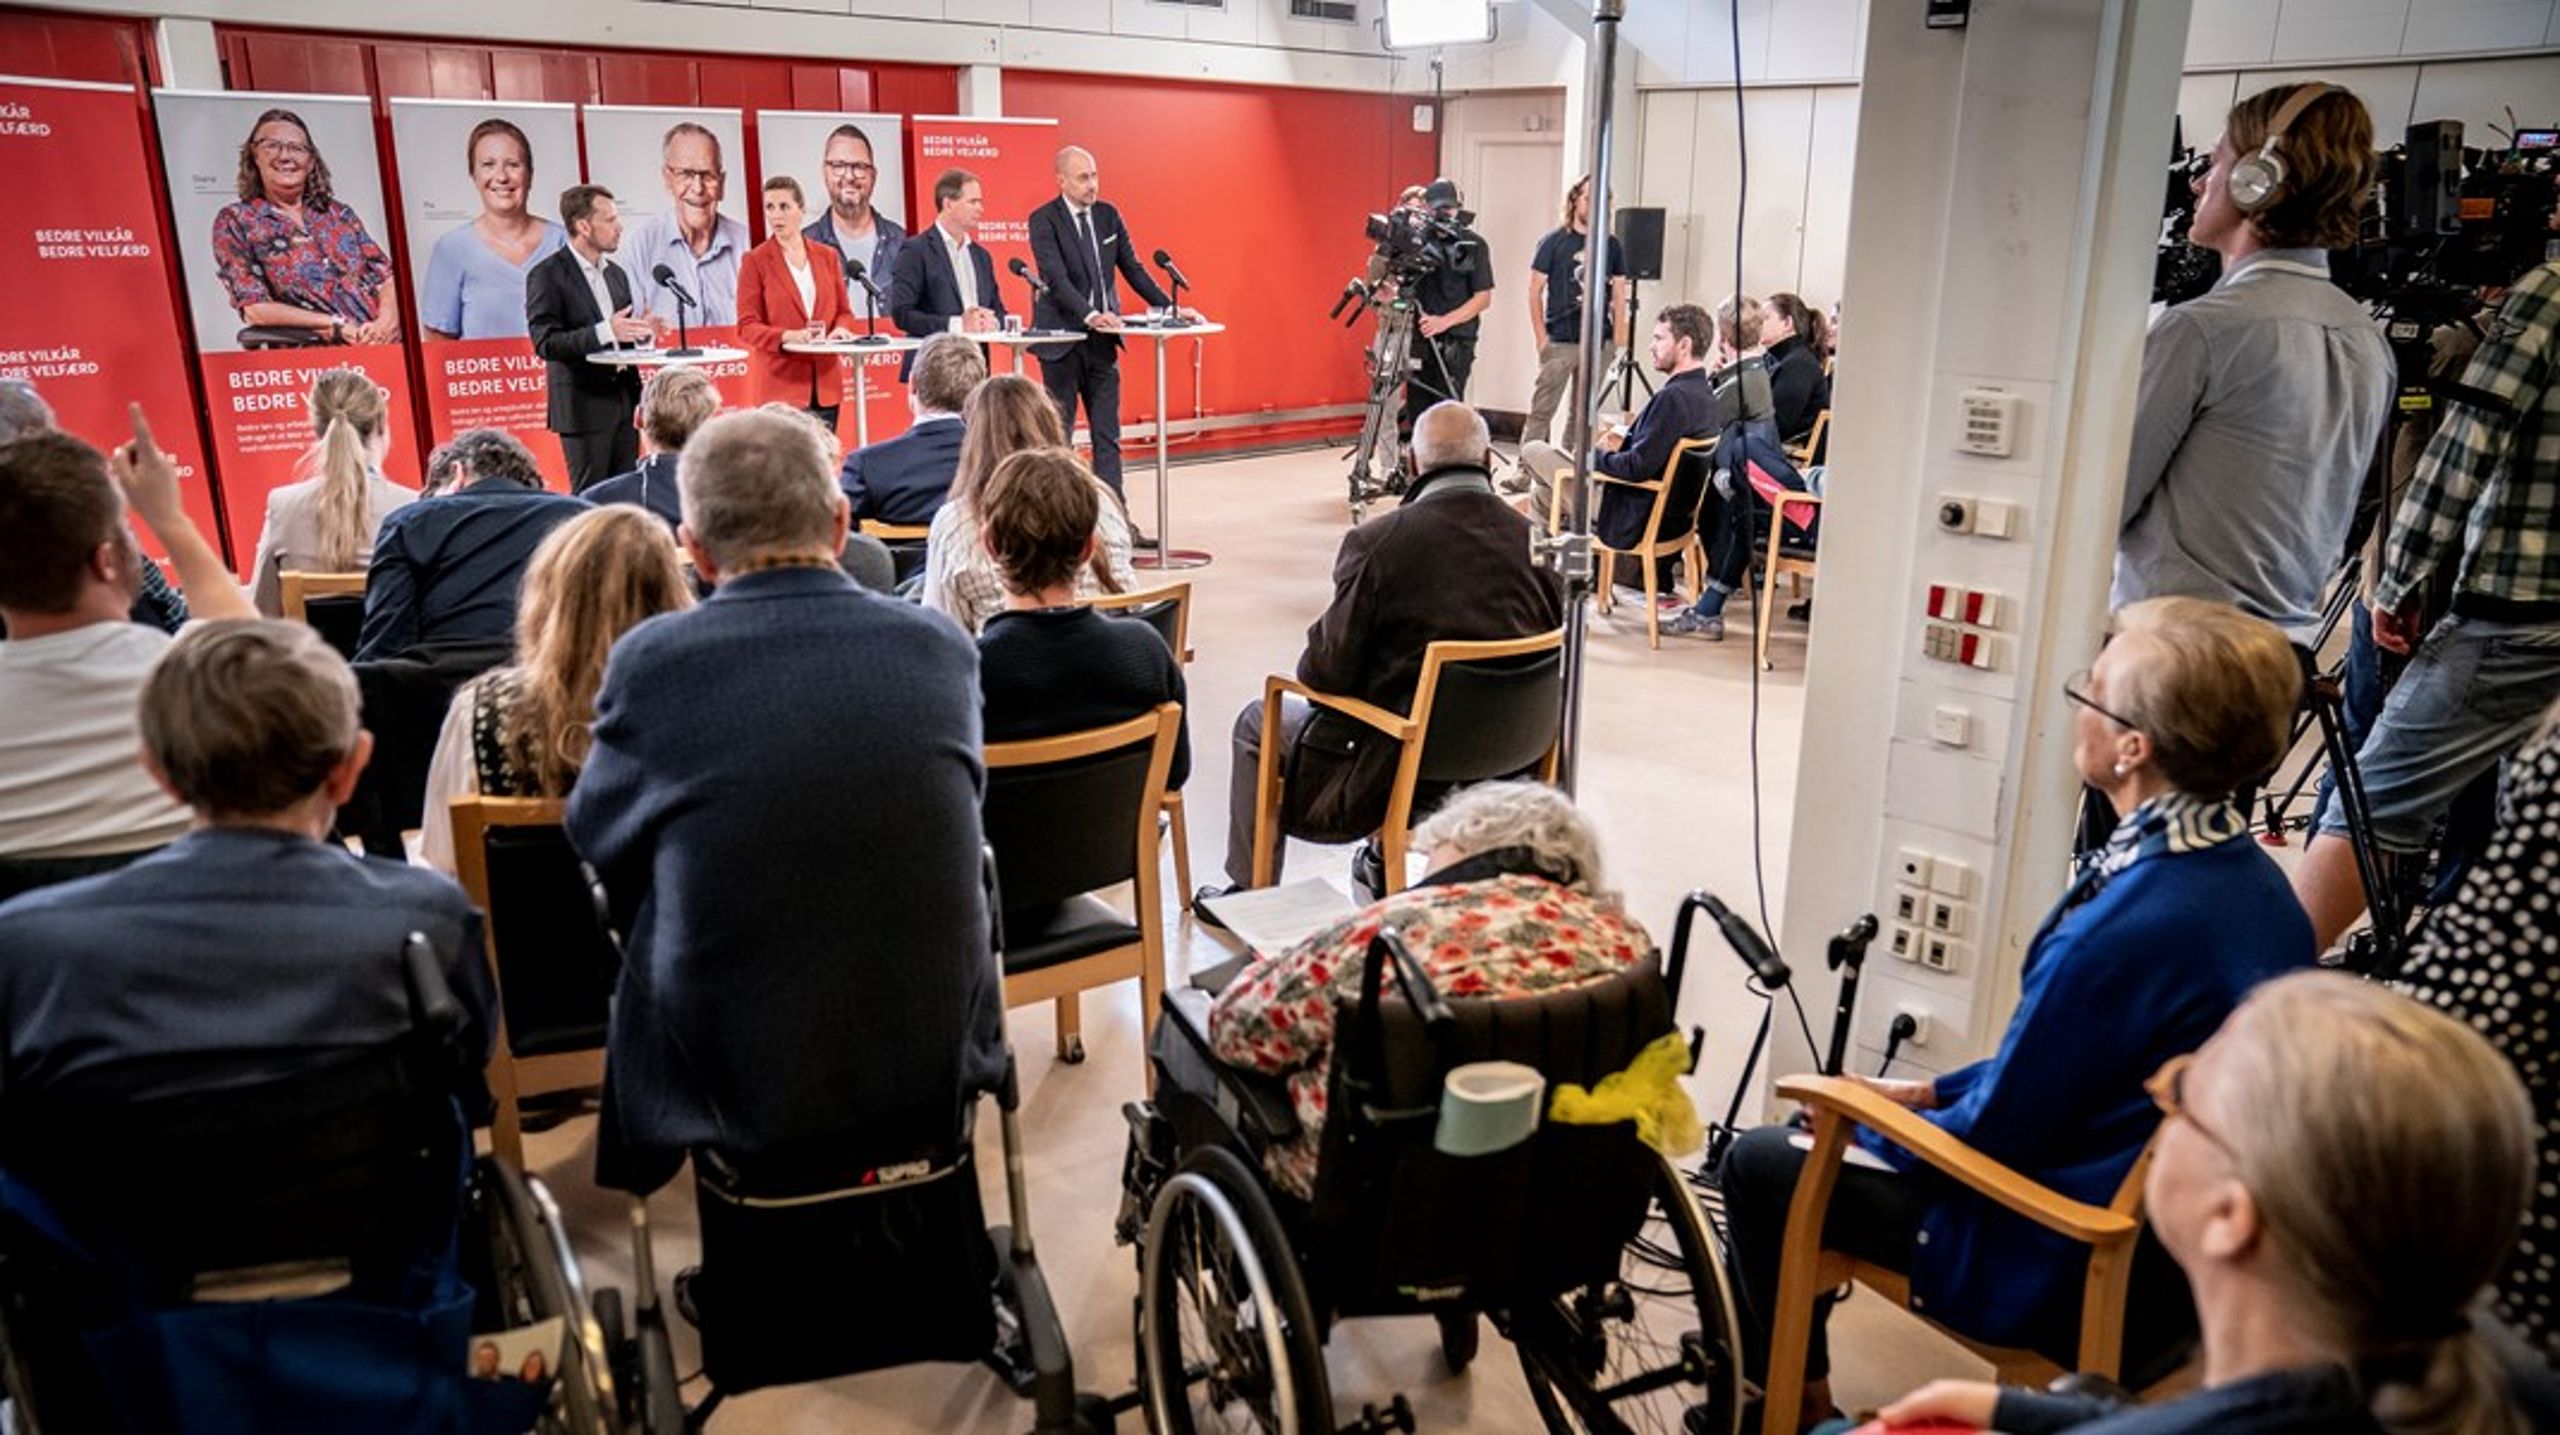 Socialdemokratiet præsenterede onsdag et nyt lønudspil – på det samme plejecenter på Nørrebro,&nbsp;hvor de i 2019 præsenterede deres udspil til en Arne-pension.